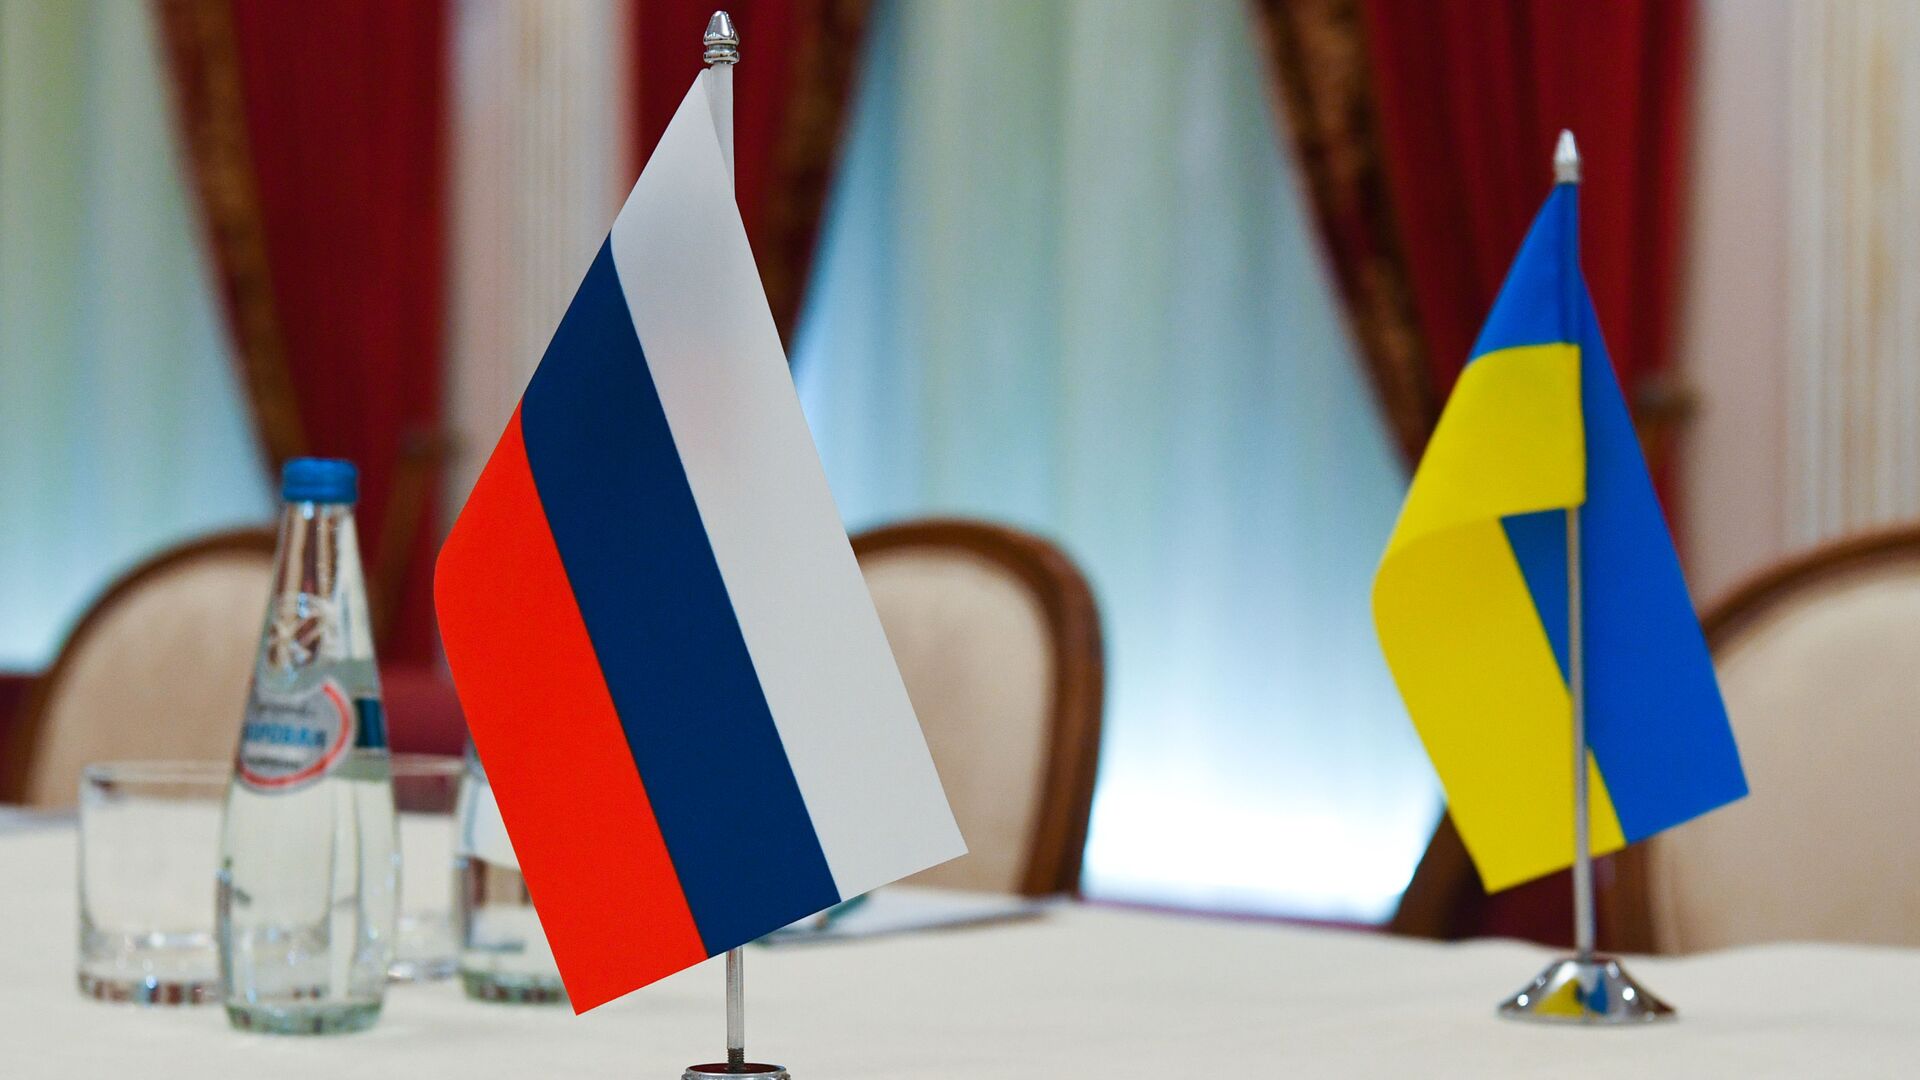 Флаги России и Украины в зале, где пройдут переговоры - Sputnik Таджикистан, 1920, 03.03.2022